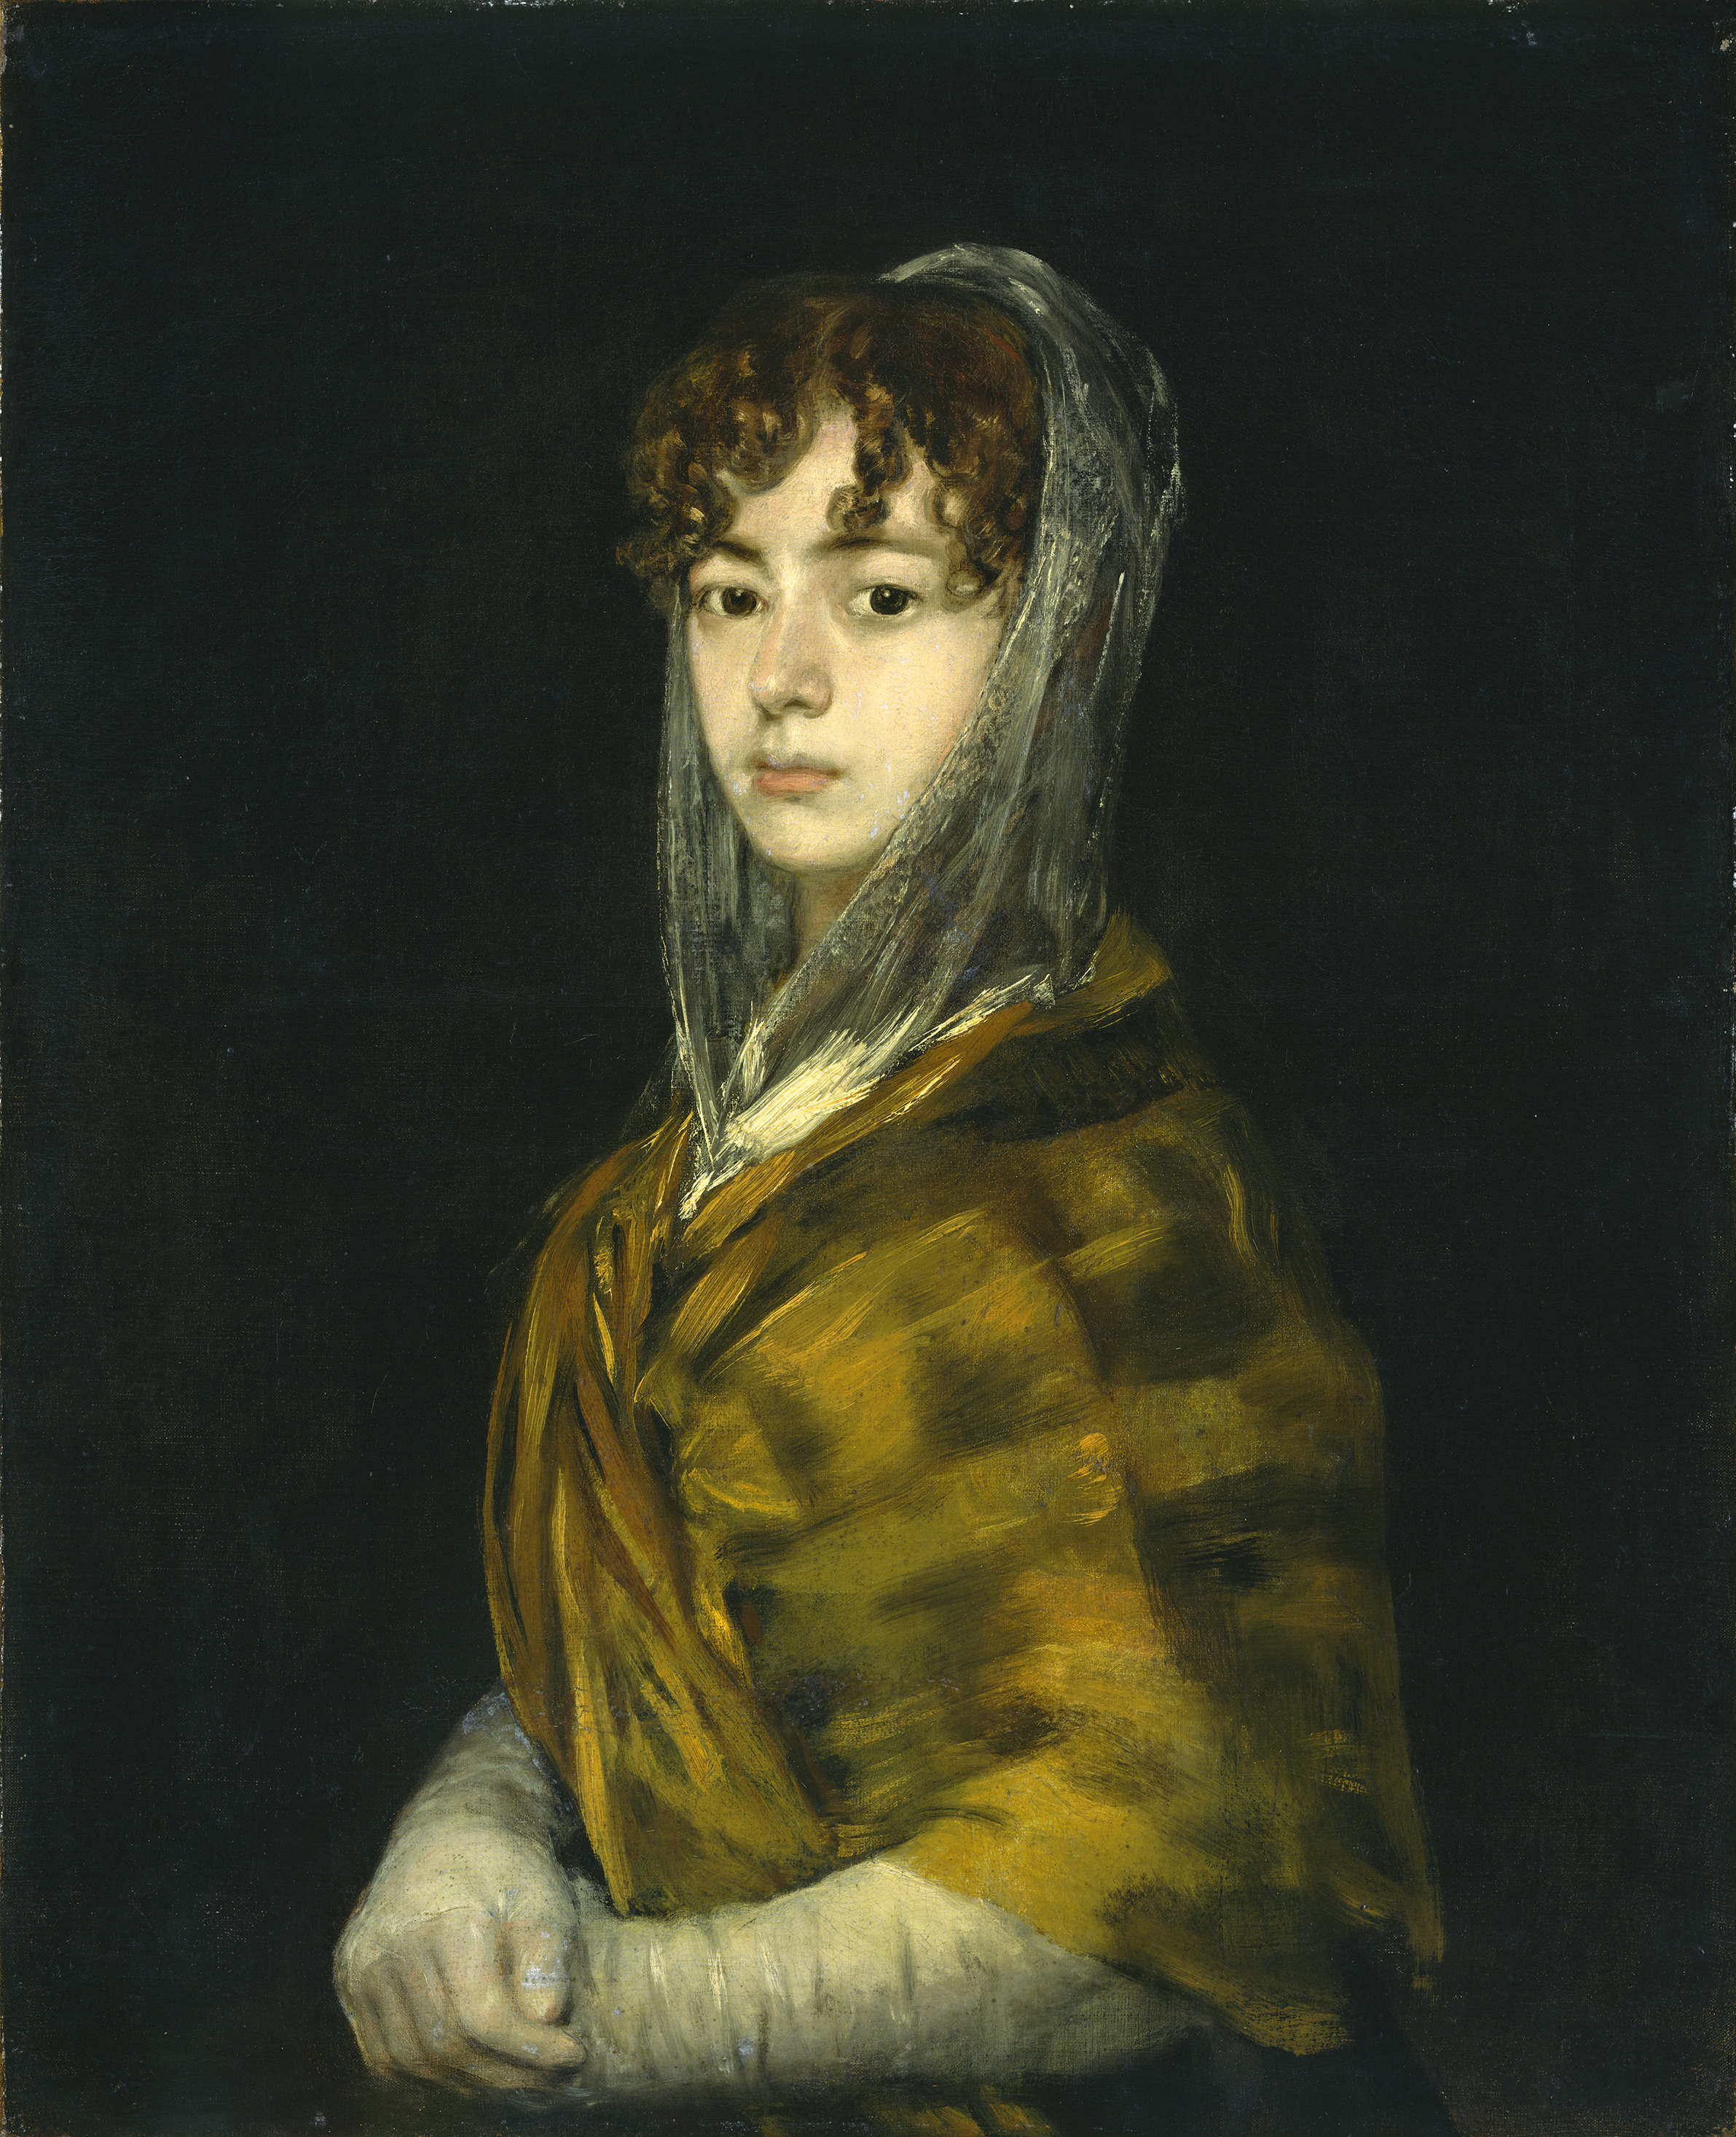 薩巴薩·加西亞夫人 by Francisco Goya - 大約1806至1811年 - 71 x 58 cm 